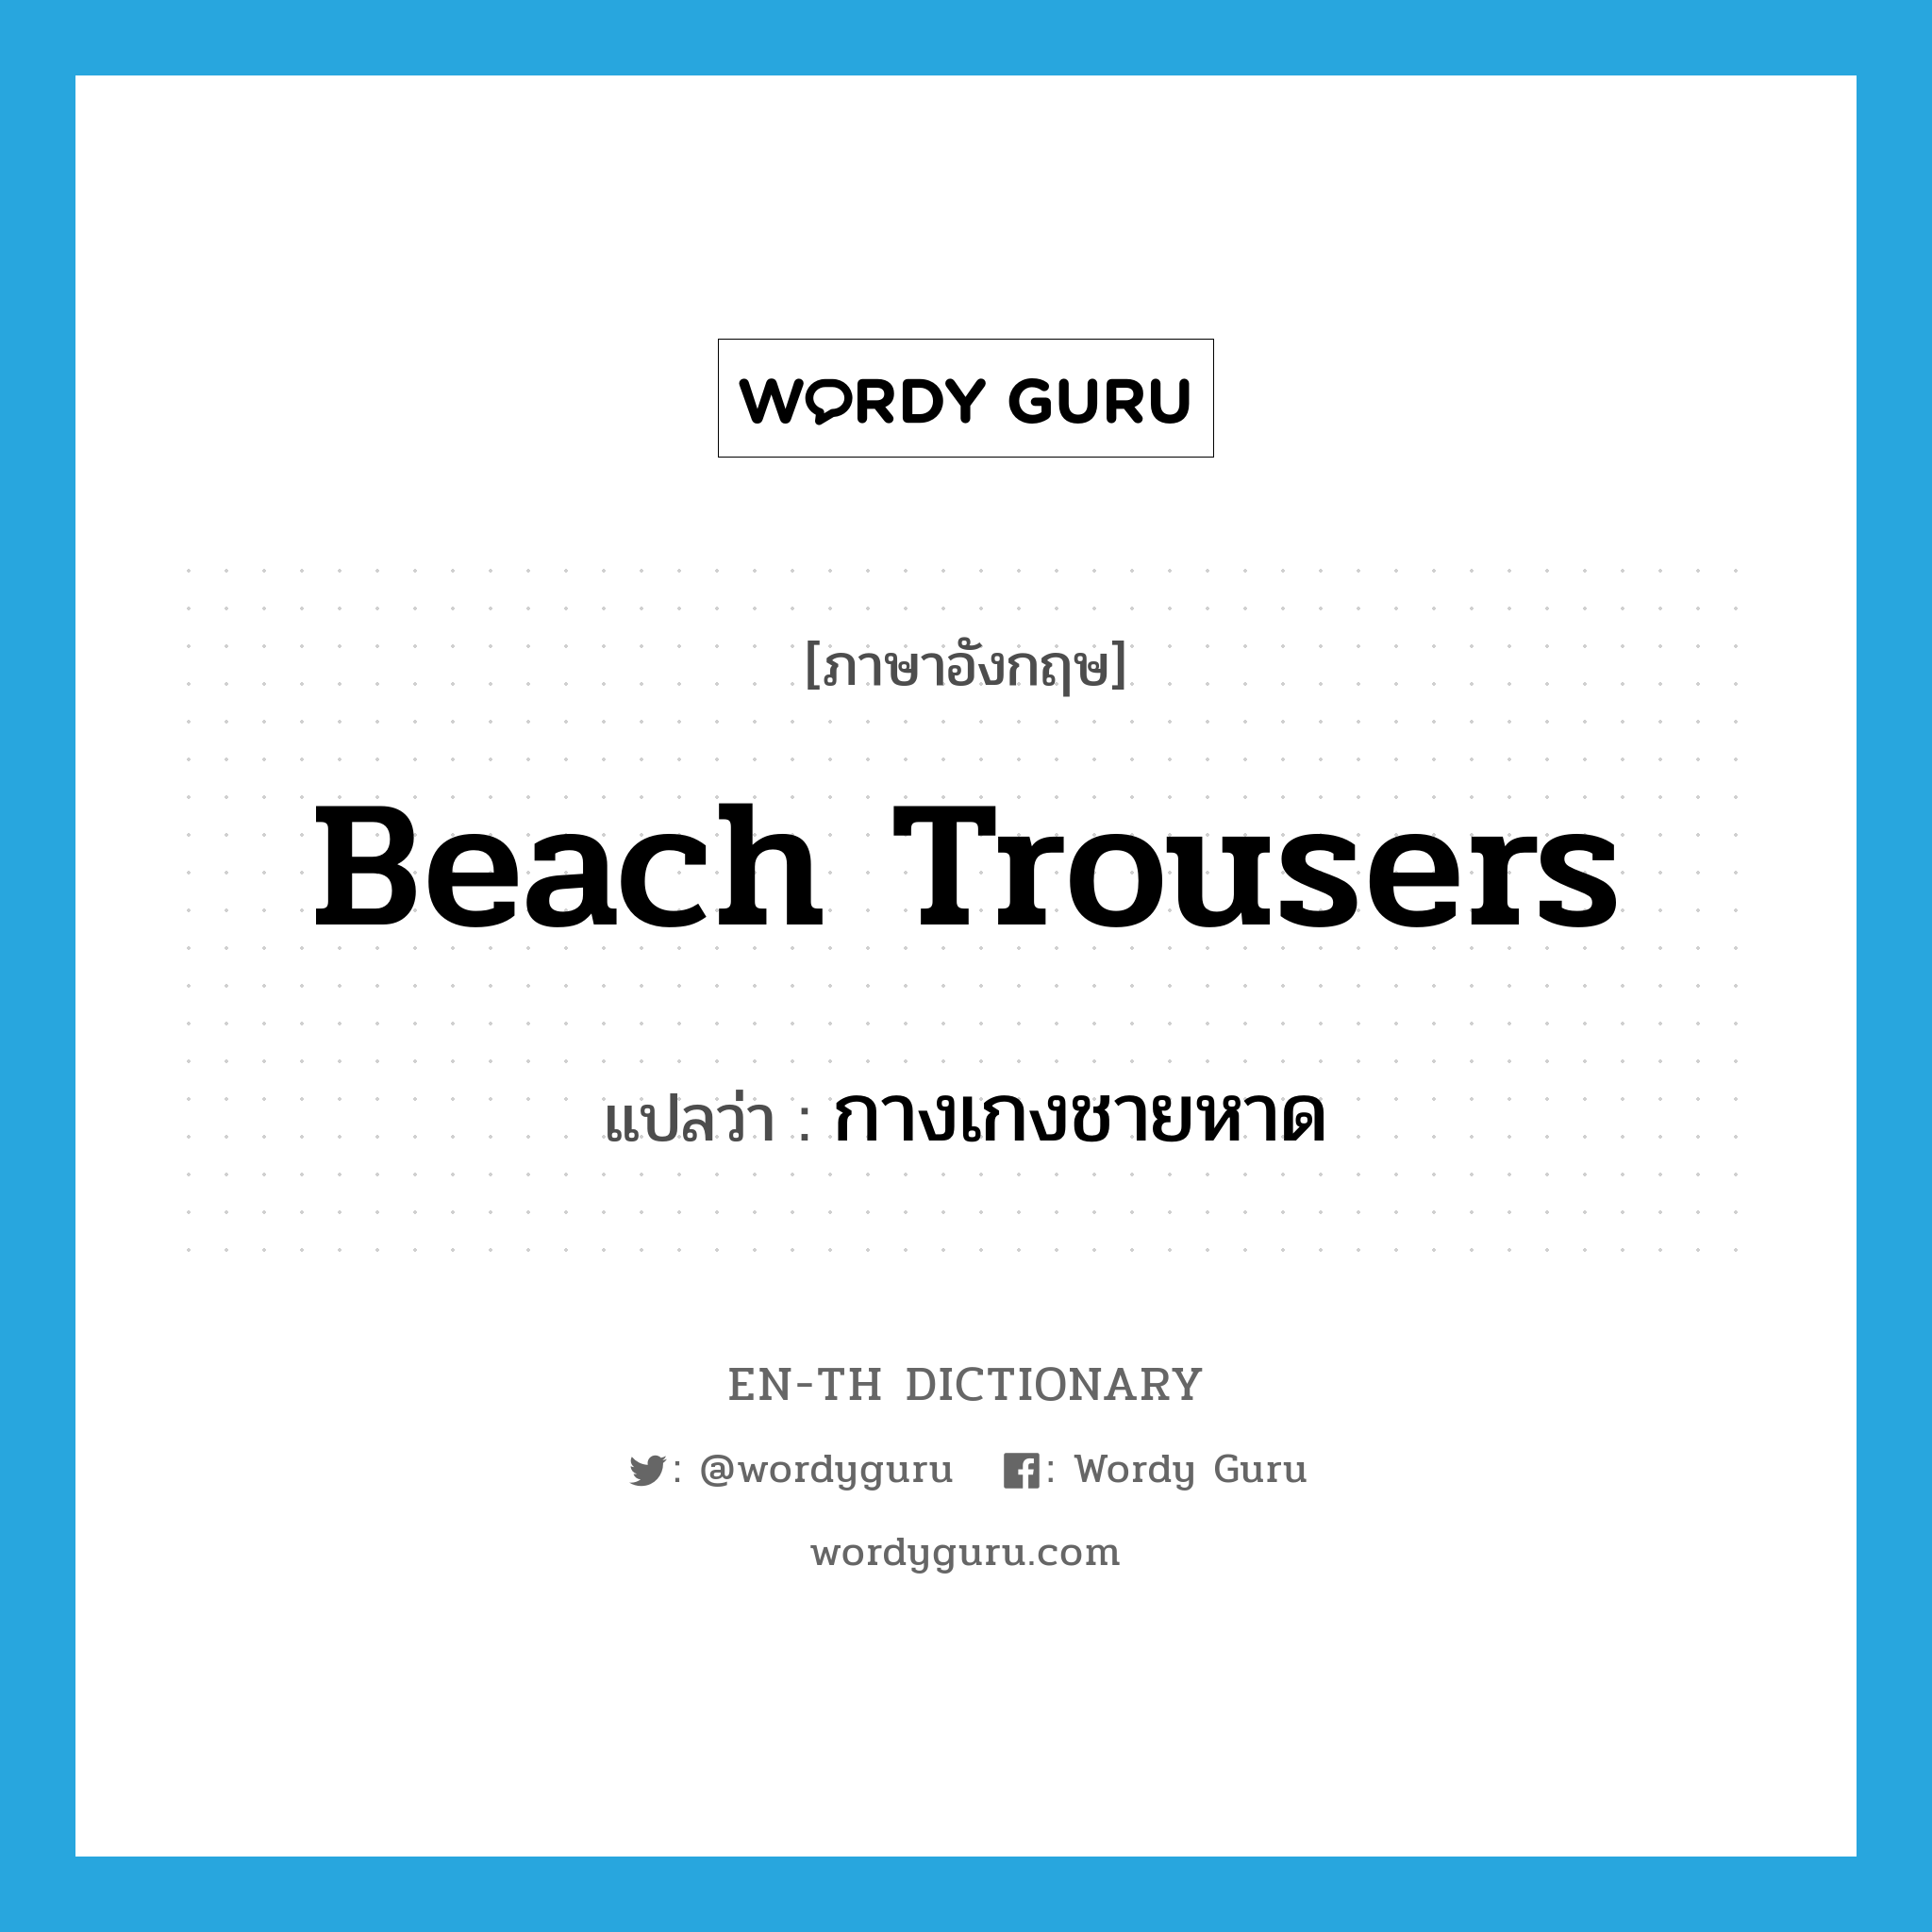 beach trousers แปลว่า?, คำศัพท์ภาษาอังกฤษ beach trousers แปลว่า กางเกงชายหาด ประเภท N หมวด N